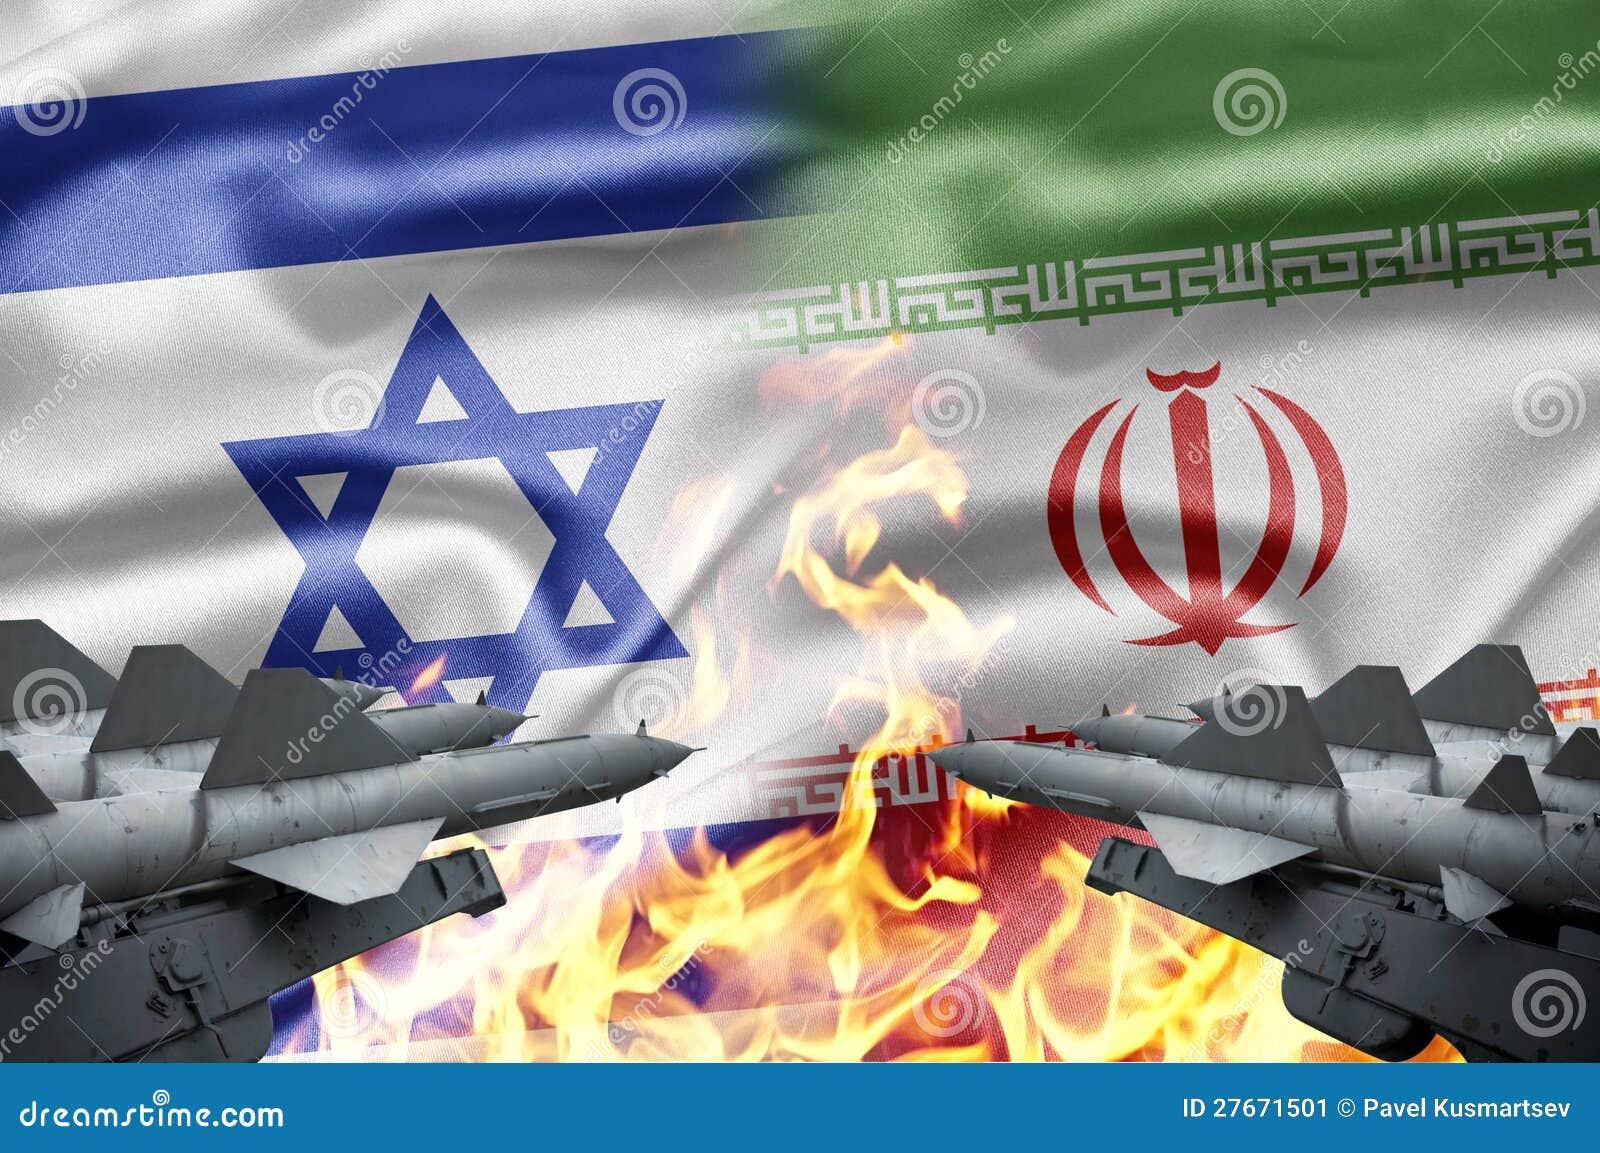 israel and iran